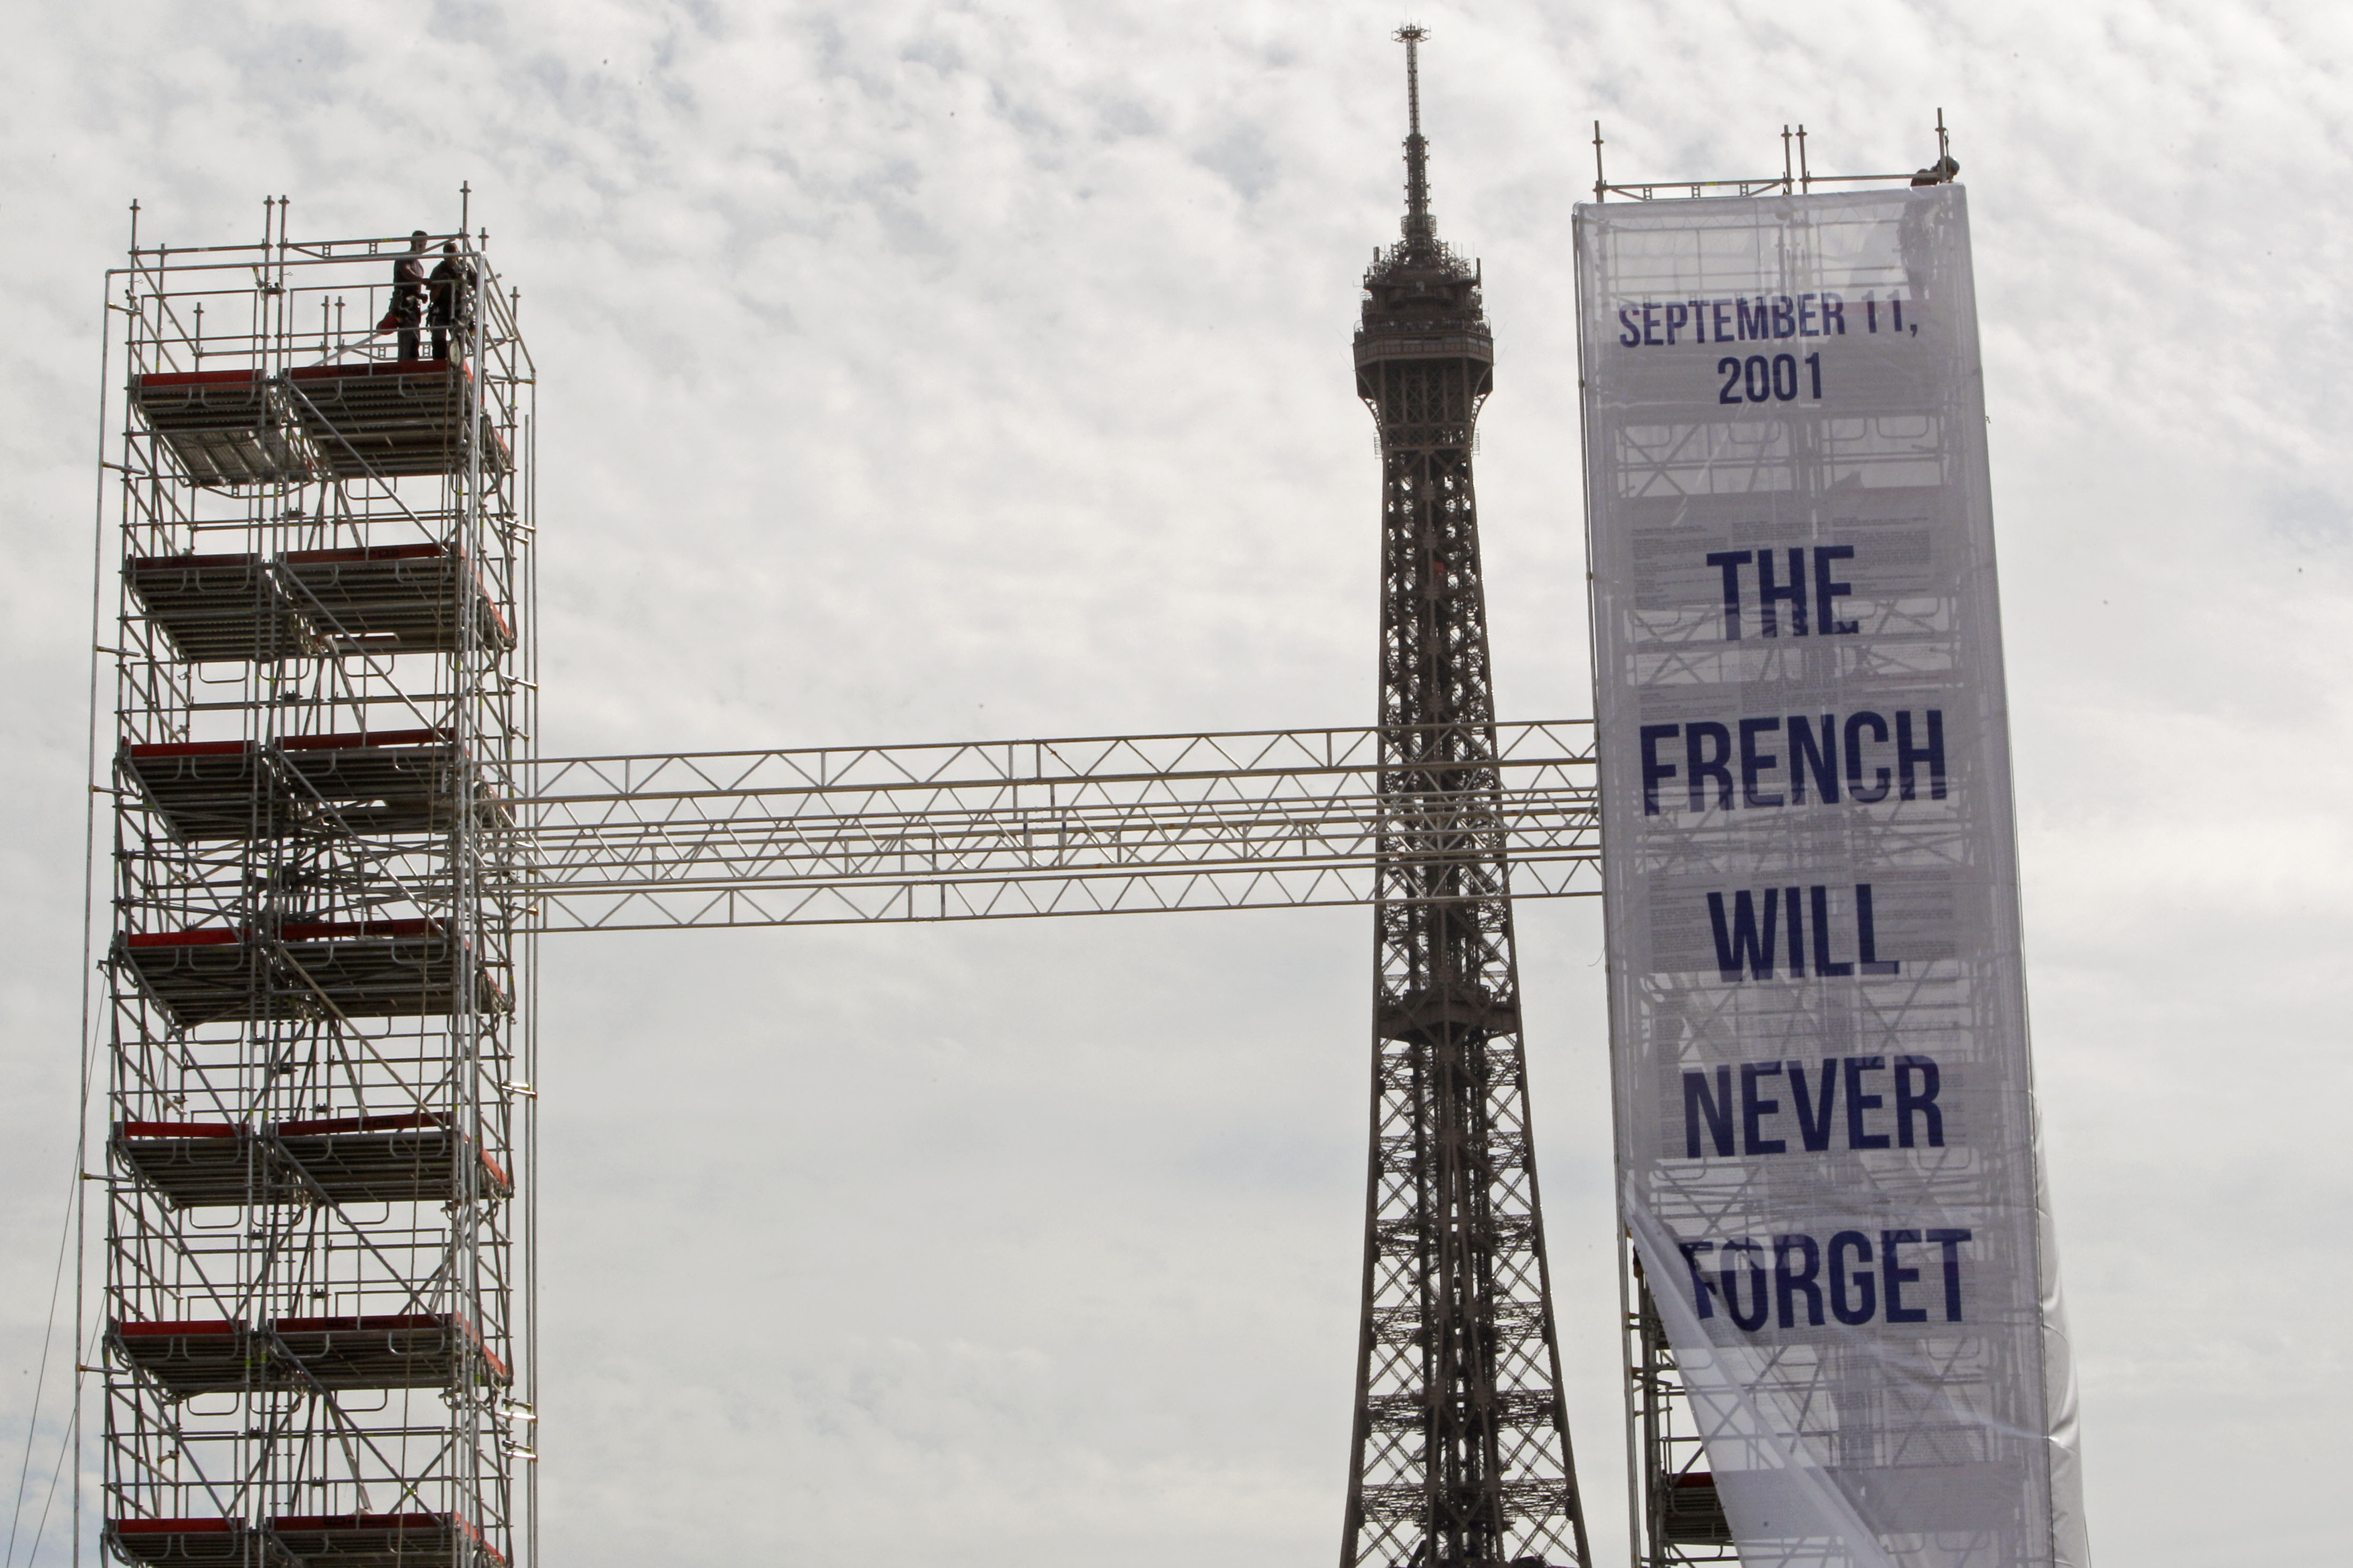 I Frankrike har man konstruerat en model som representerar tvillingtornen med texten "September 11, 2001 - The French Will Never Forget", som en symbolisk handling för att hedra minnet av de som mist livet till följd av terrorattackerna mot World Trade Ce